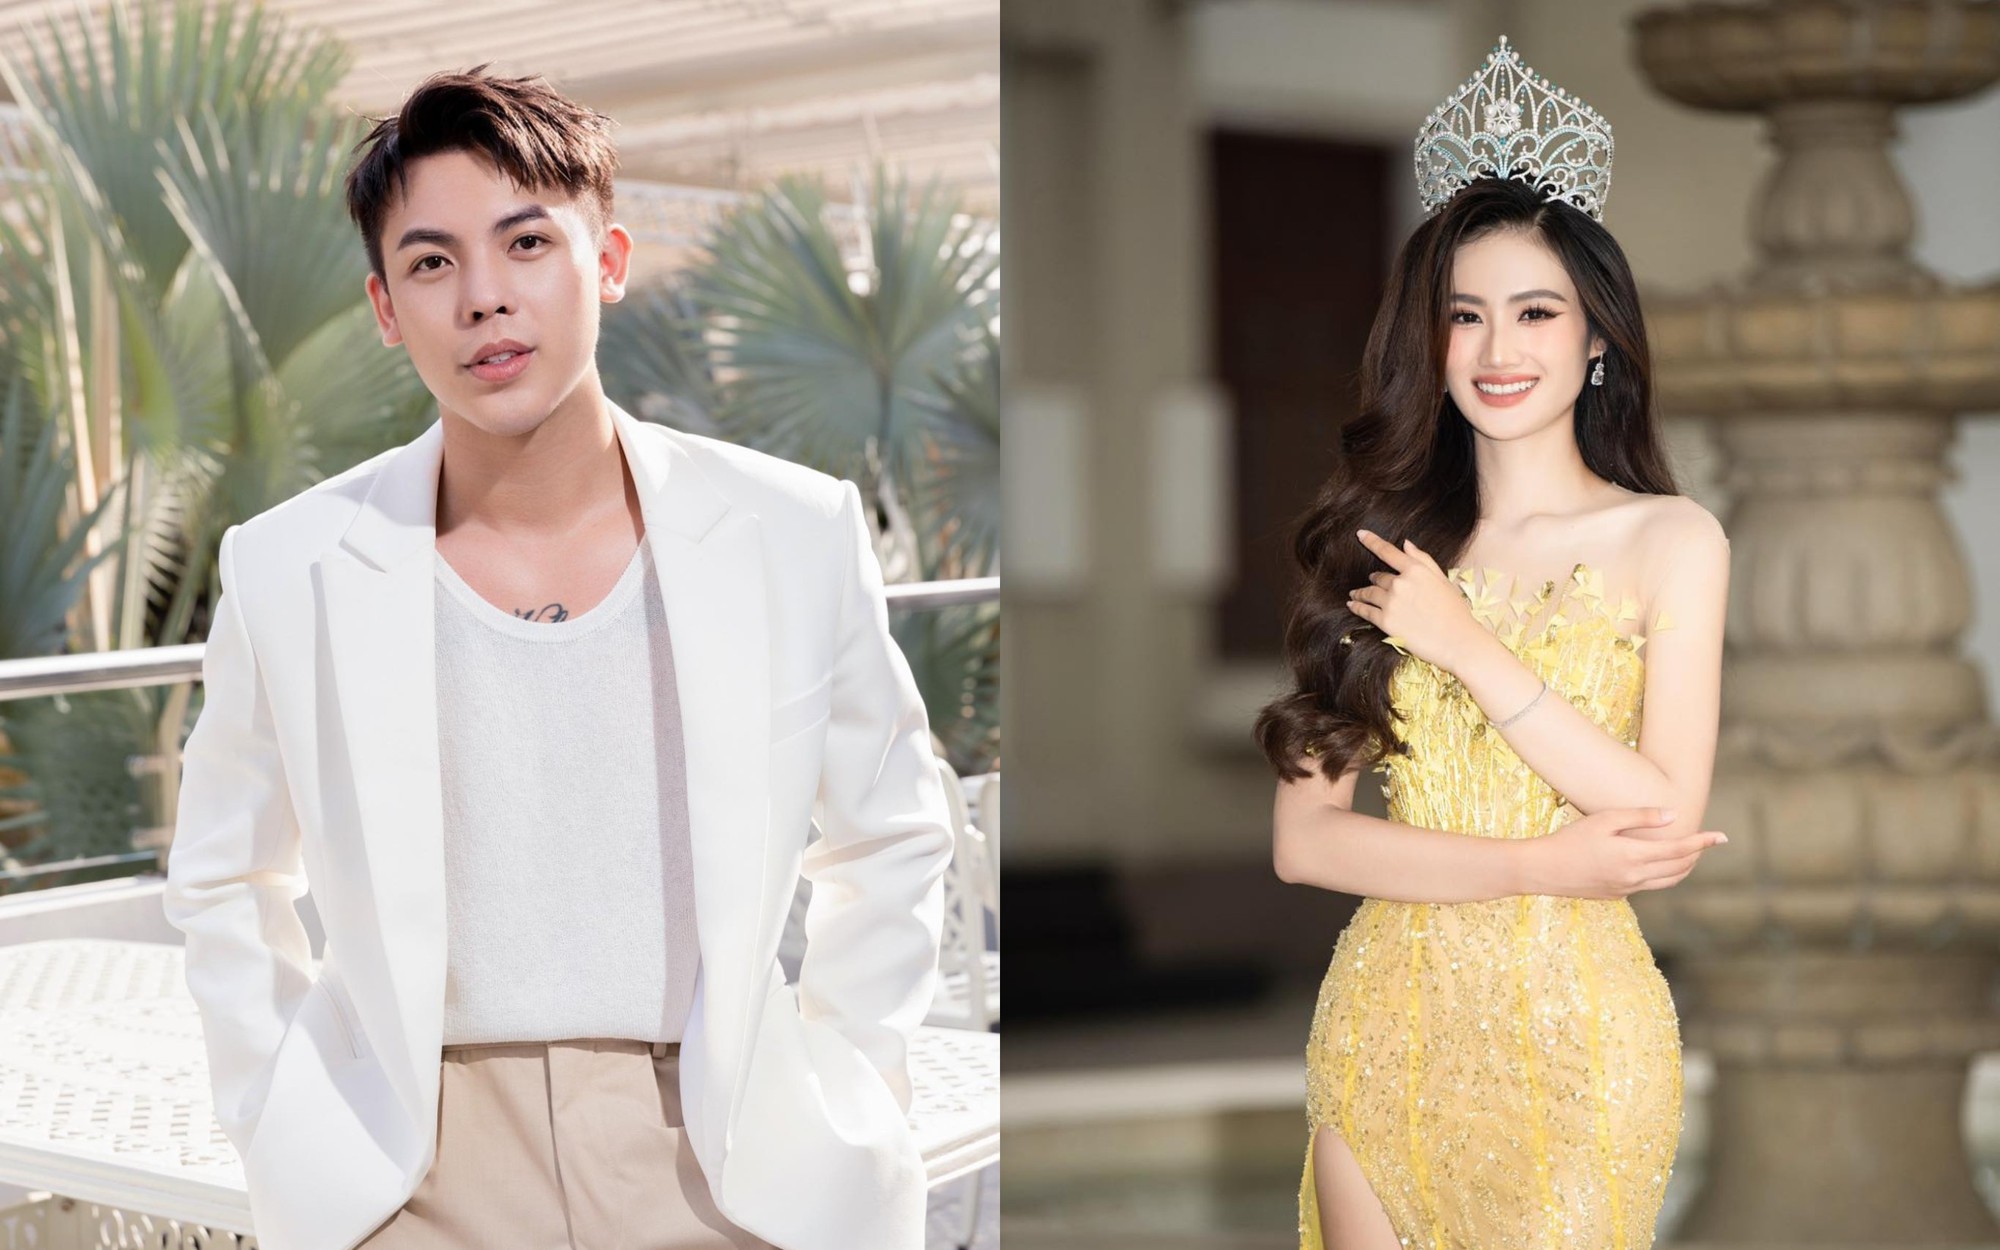 Học sao Việt chọn váy vàng đi chơi Tết vừa nổi bật vừa mang lại may mắn